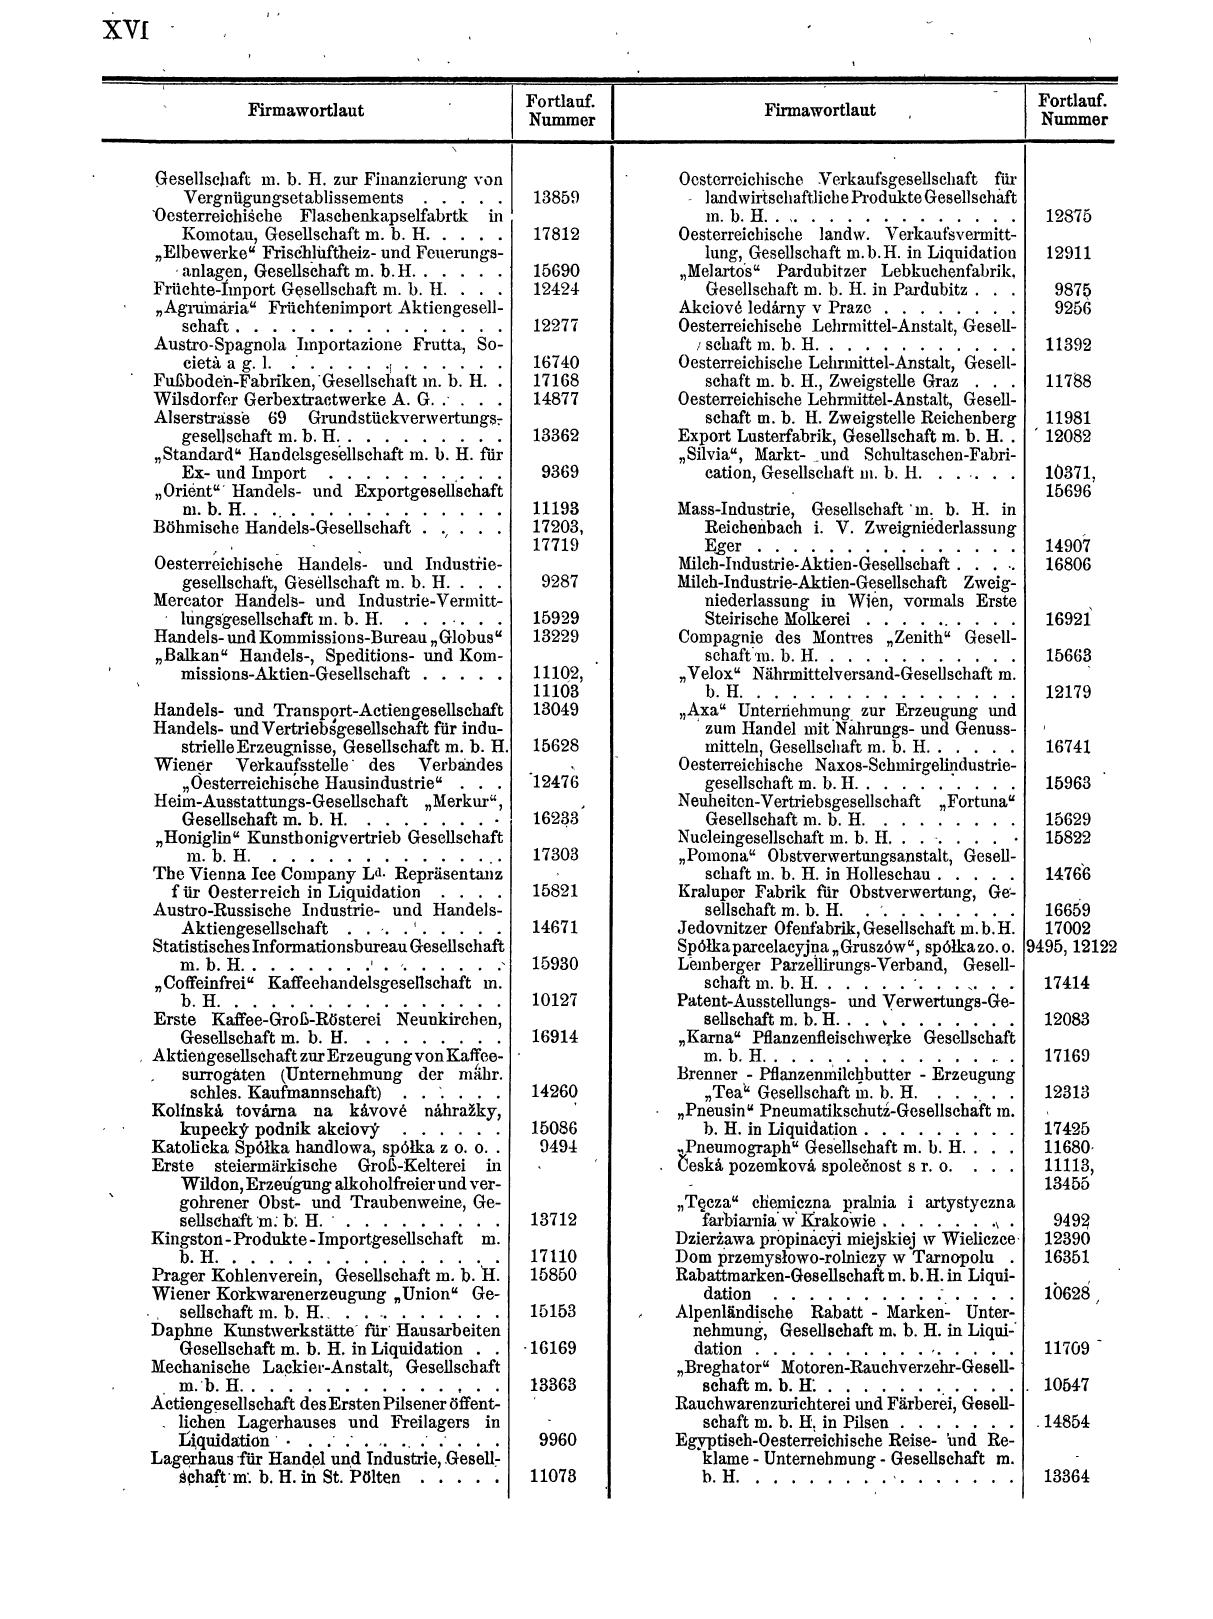 Zentralblatt für die Eintragungen in das Handelsregister 1913, Teil 2 - Seite 20